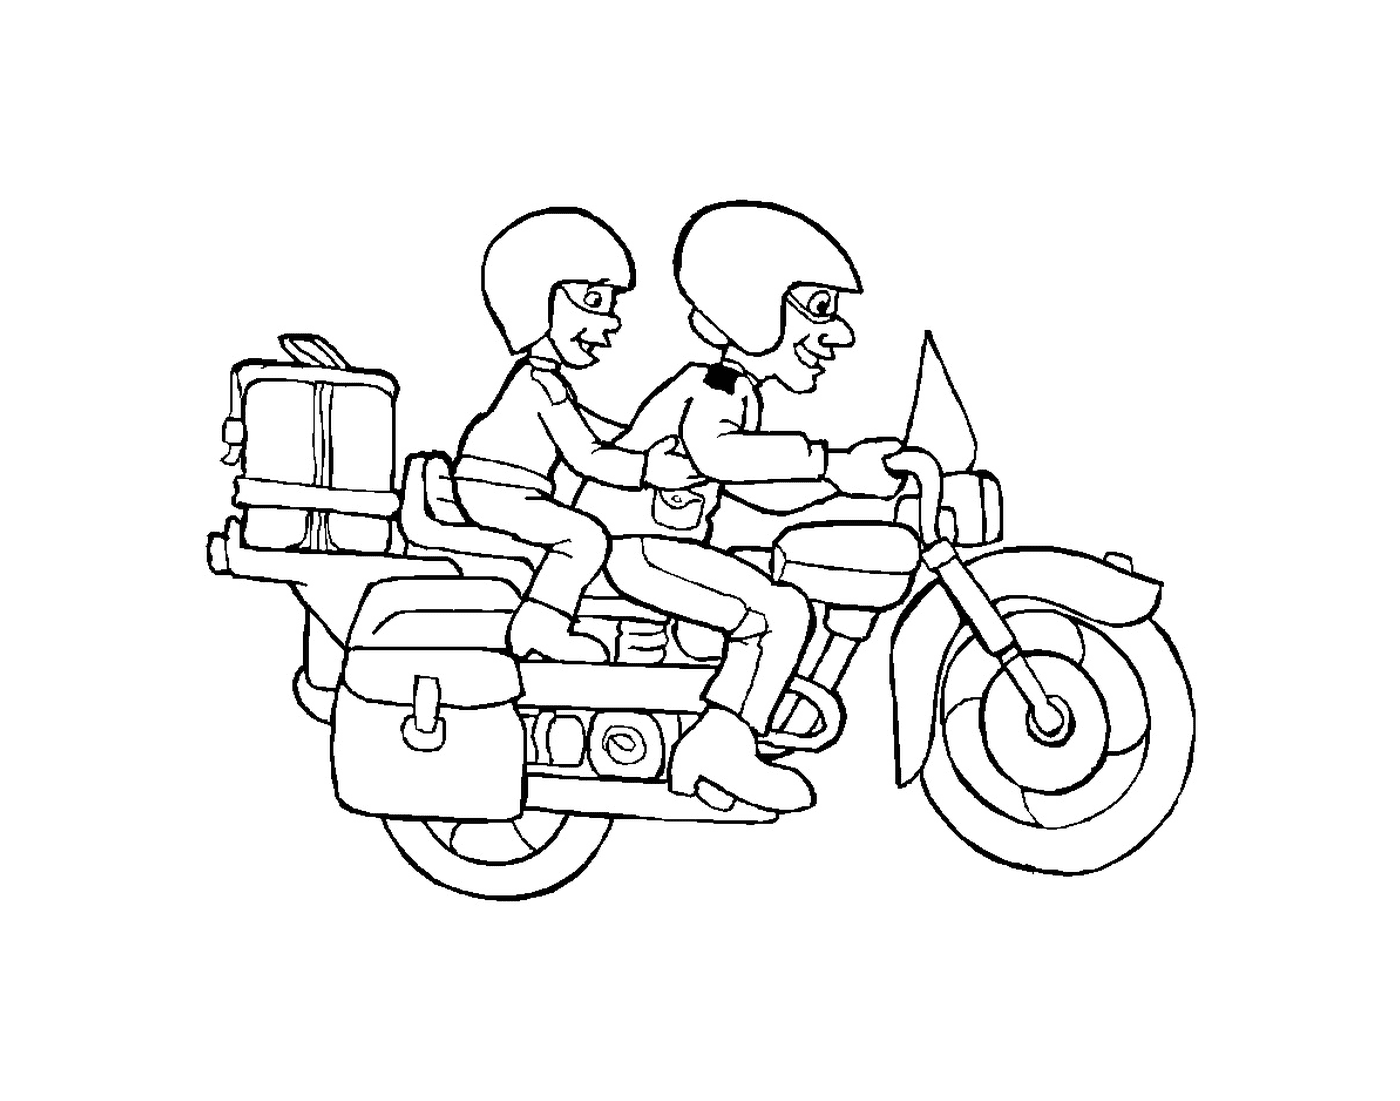  Zwei Personen auf einem Motorrad 